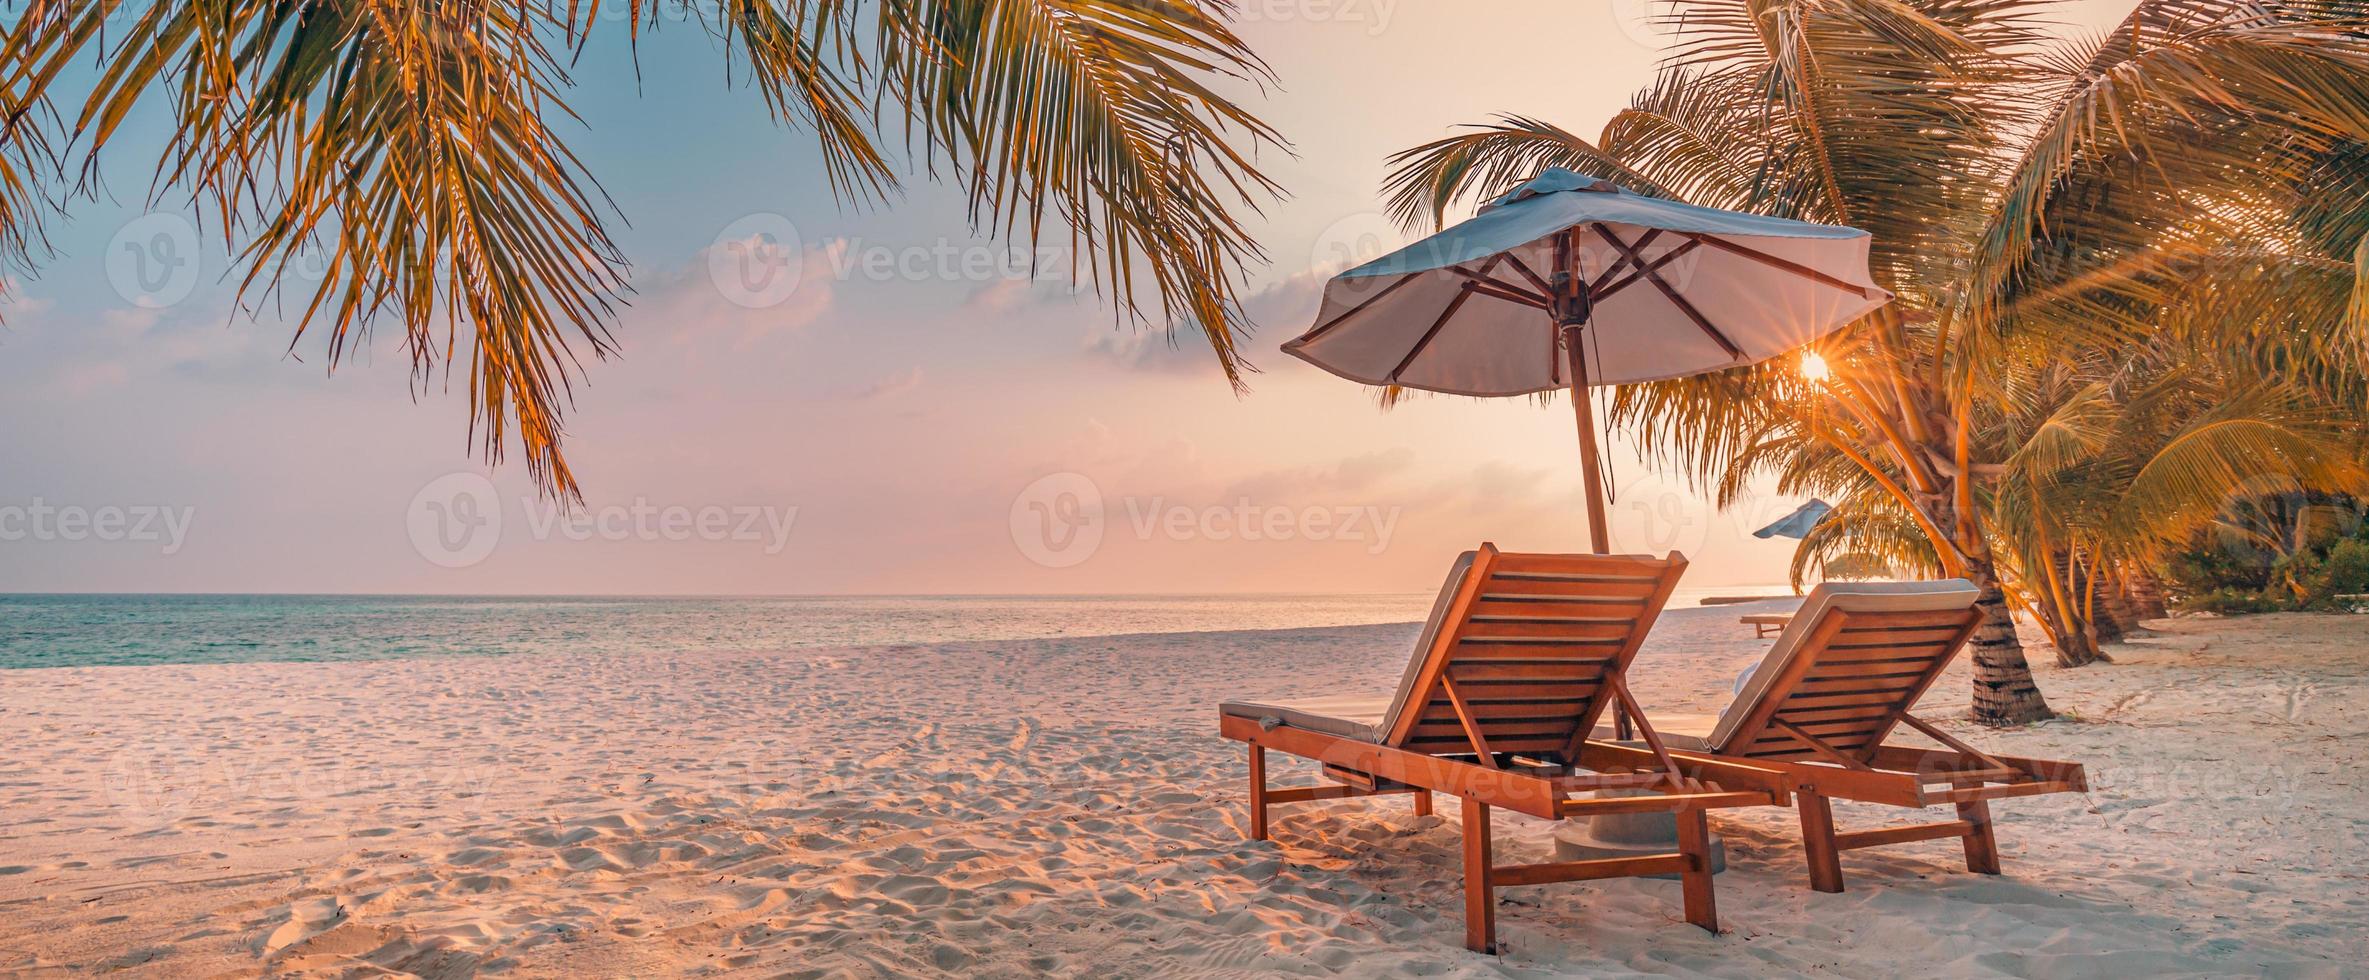 geweldig romantisch strand. stoelen op het zandstrand in de buurt van de zee. zomervakantie vakantie concept voor toerisme. tropisch eiland landschap. rustig kustlandschap, ontspannen kusthorizon, palmbladeren foto